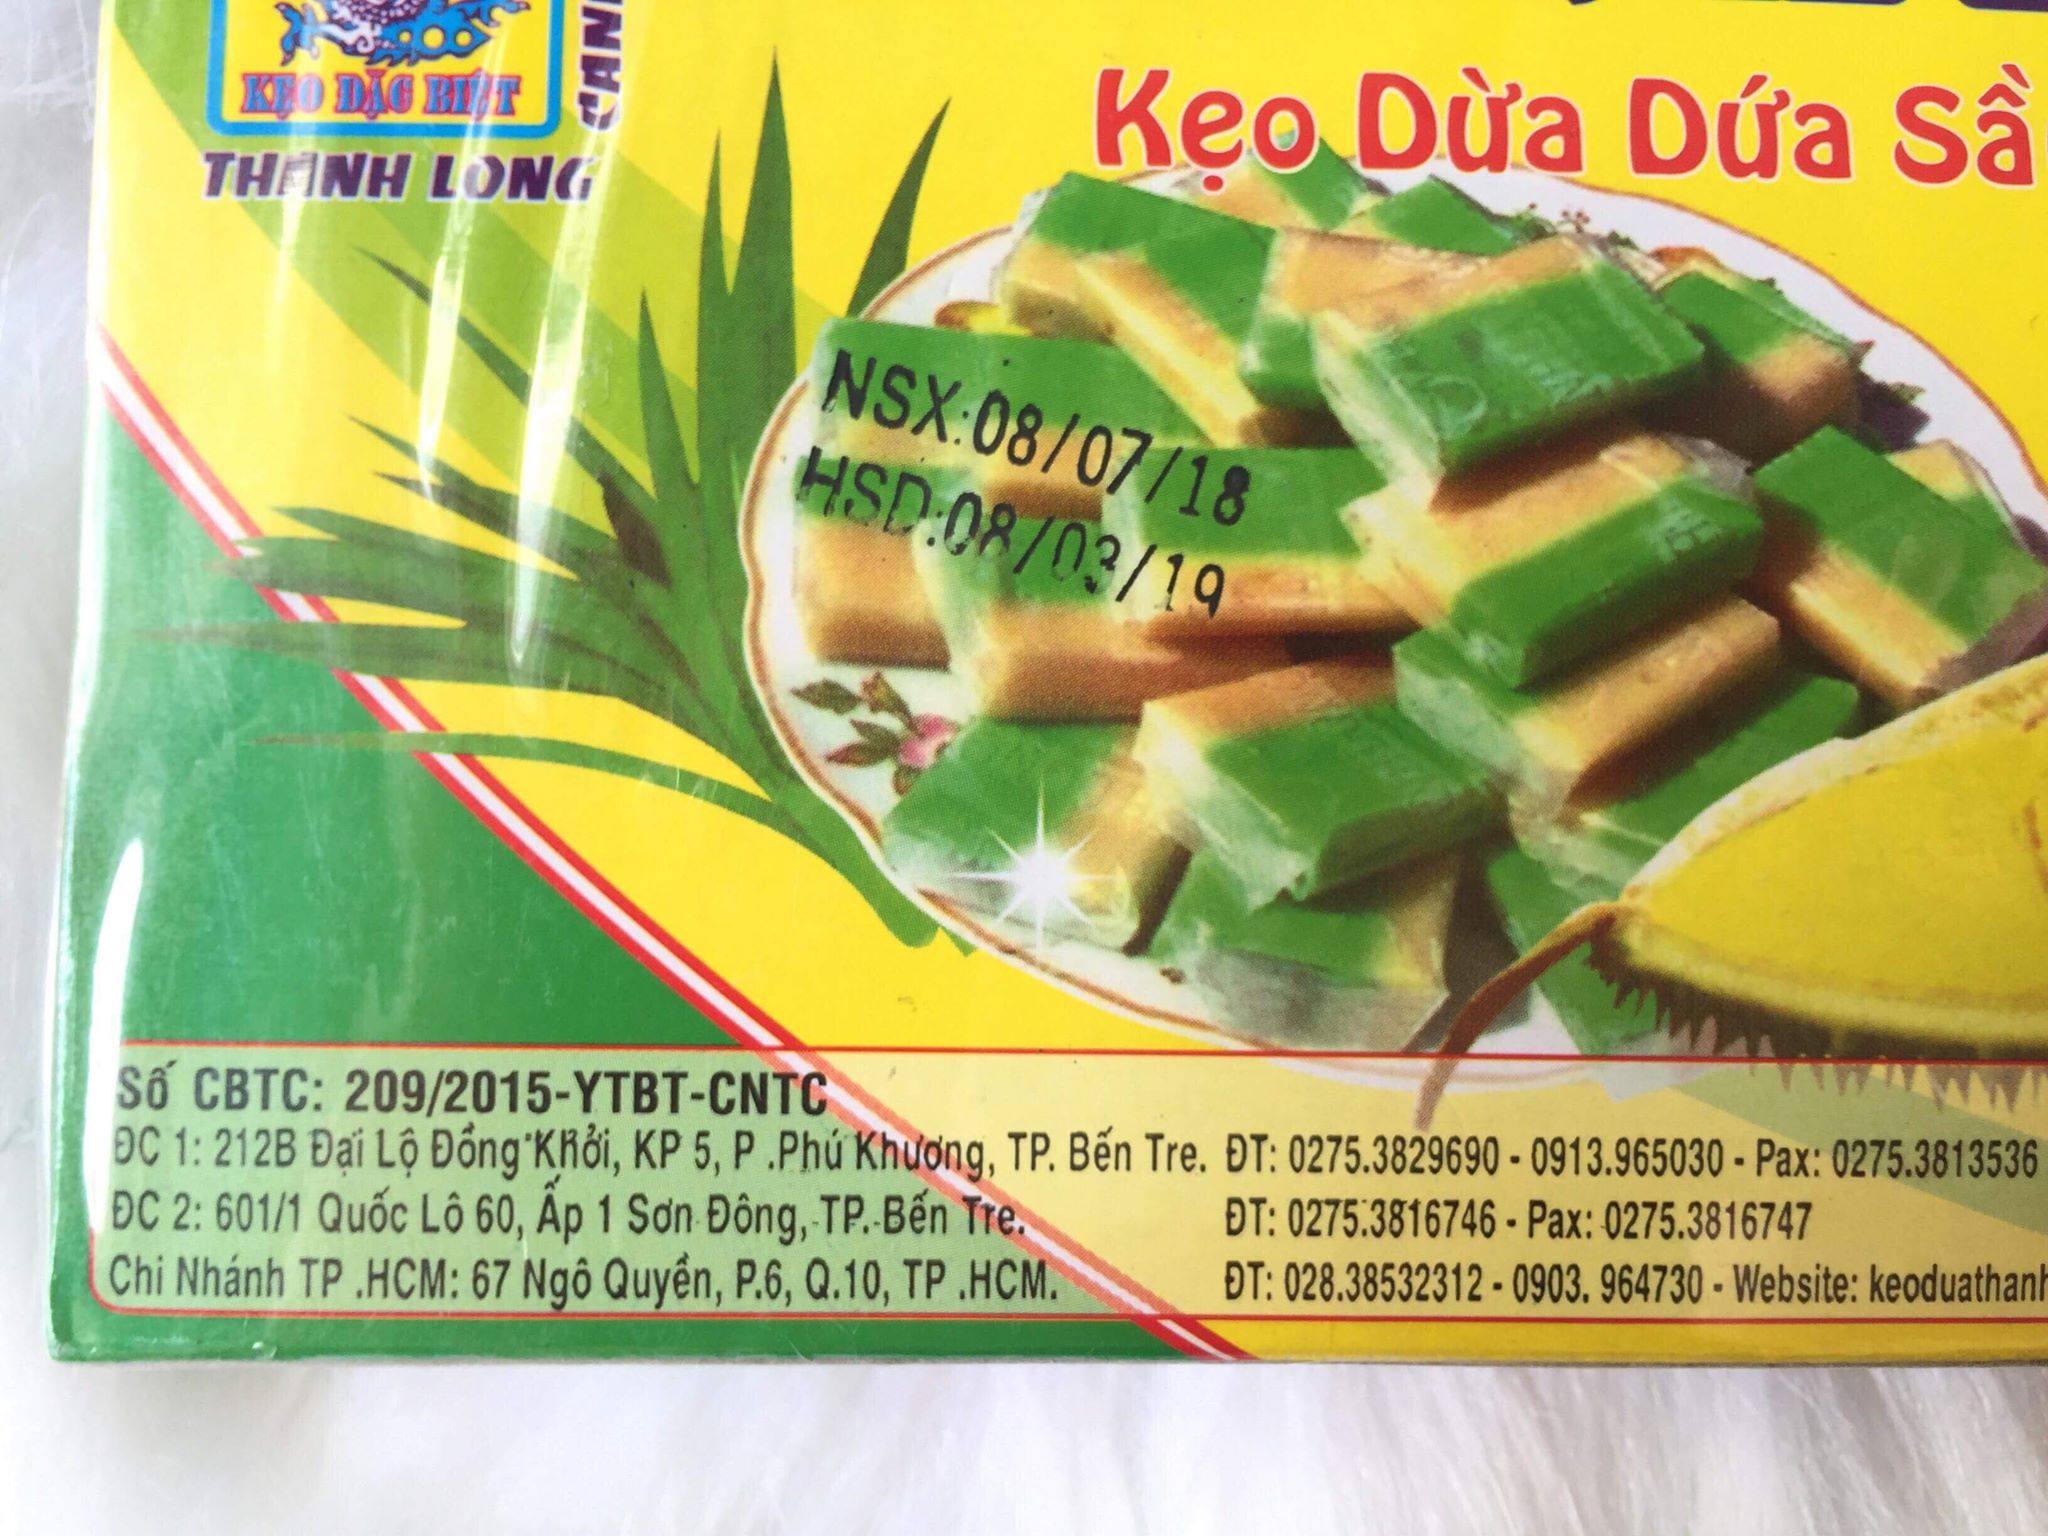 Kẹo dừa bến tre sầu riêng lá dứa